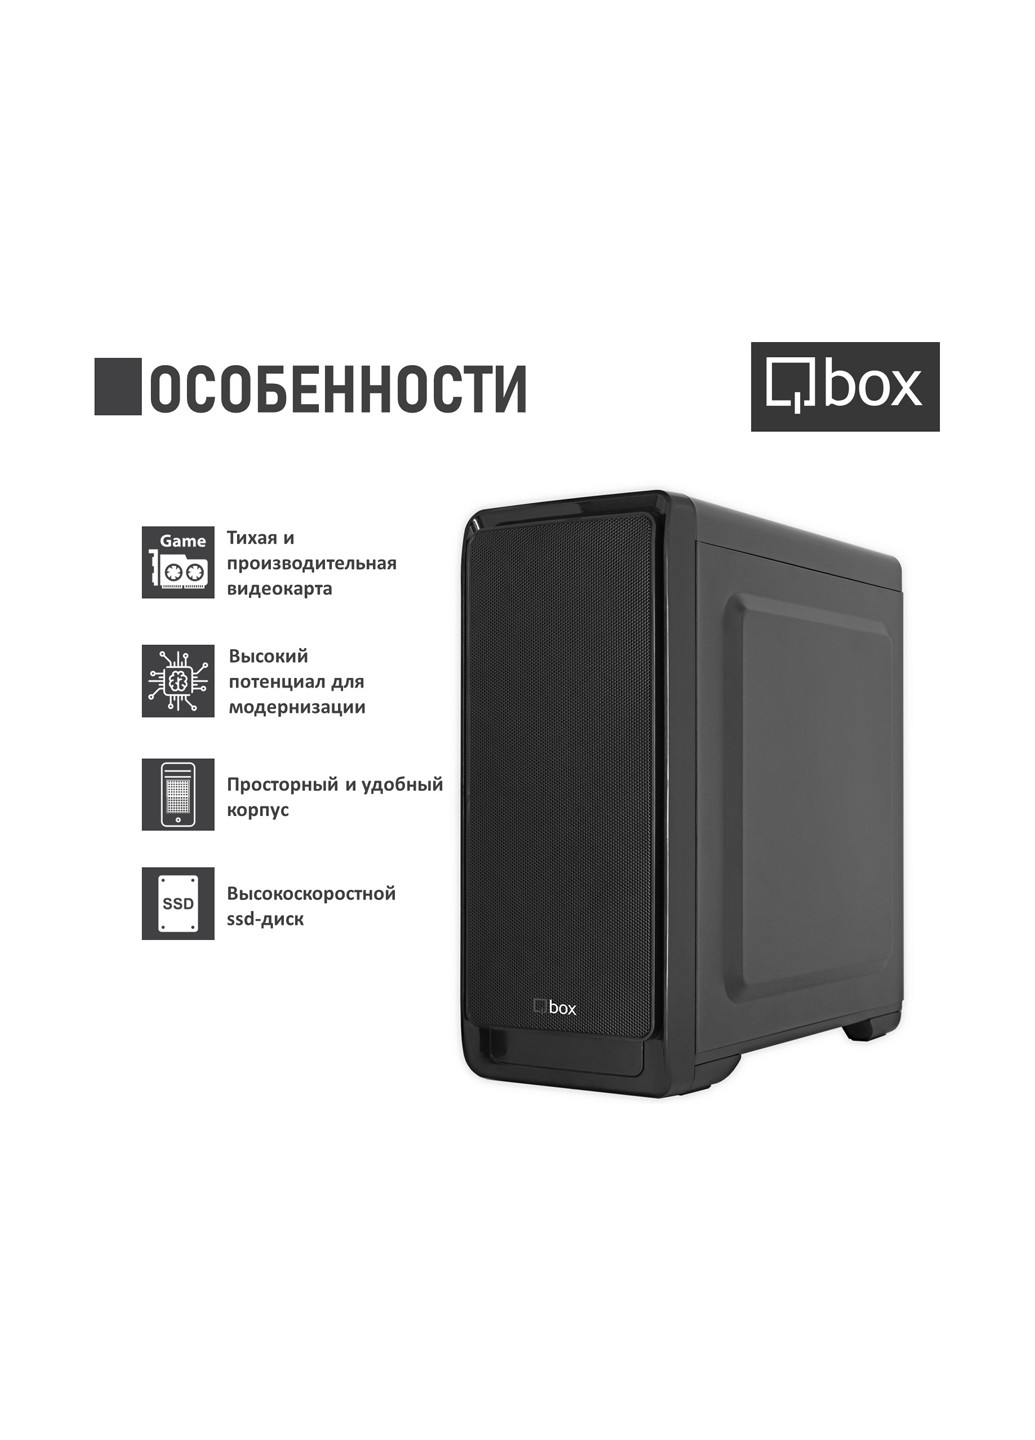 Компьютер I2645 Qbox qbox i2645 (131396732)